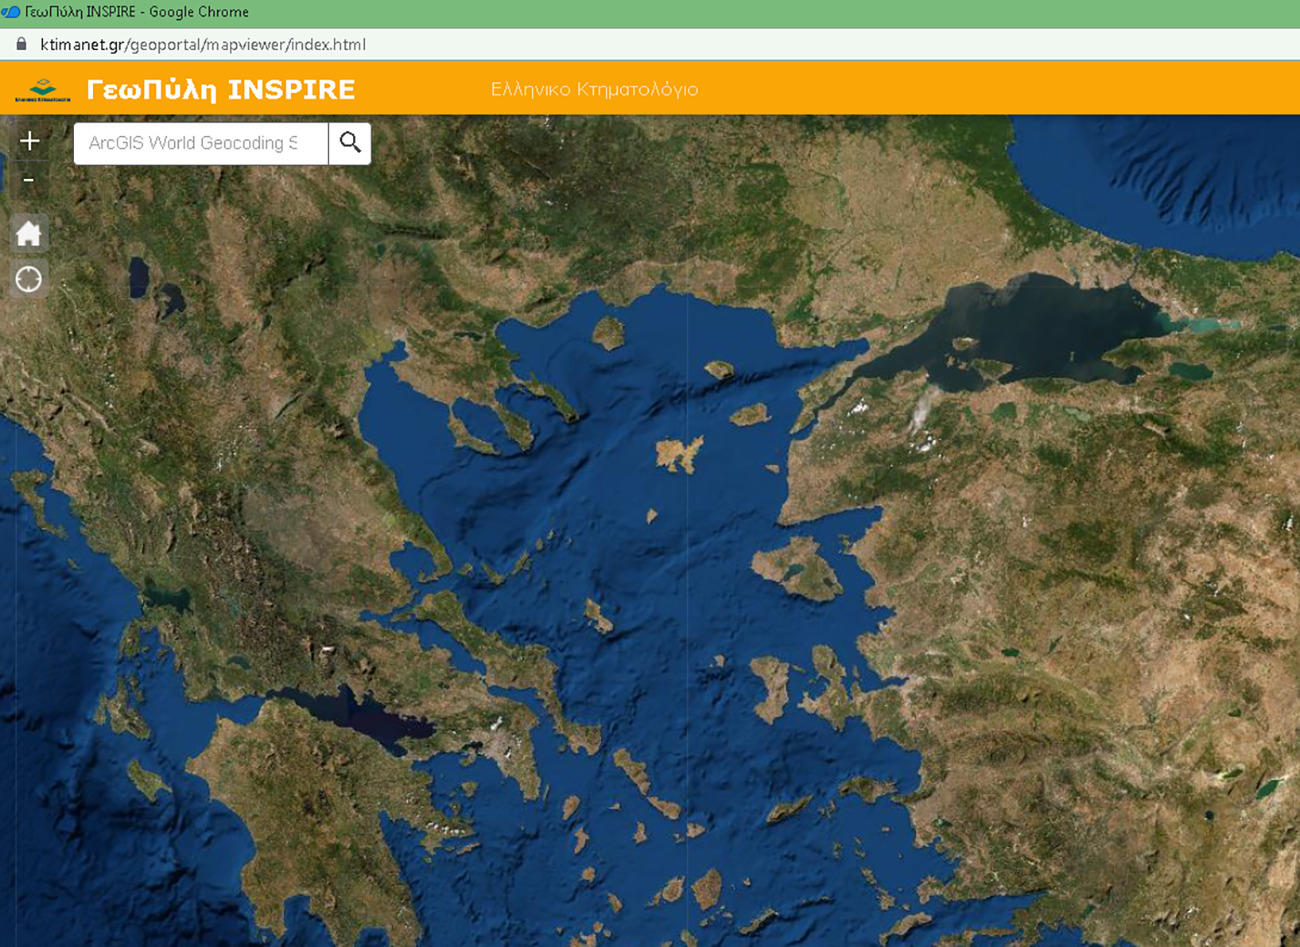 Ελληνικό Κτηματολόγιο: Το INSPIRE συμπλήρωσε δύο χρόνια λειτουργίας